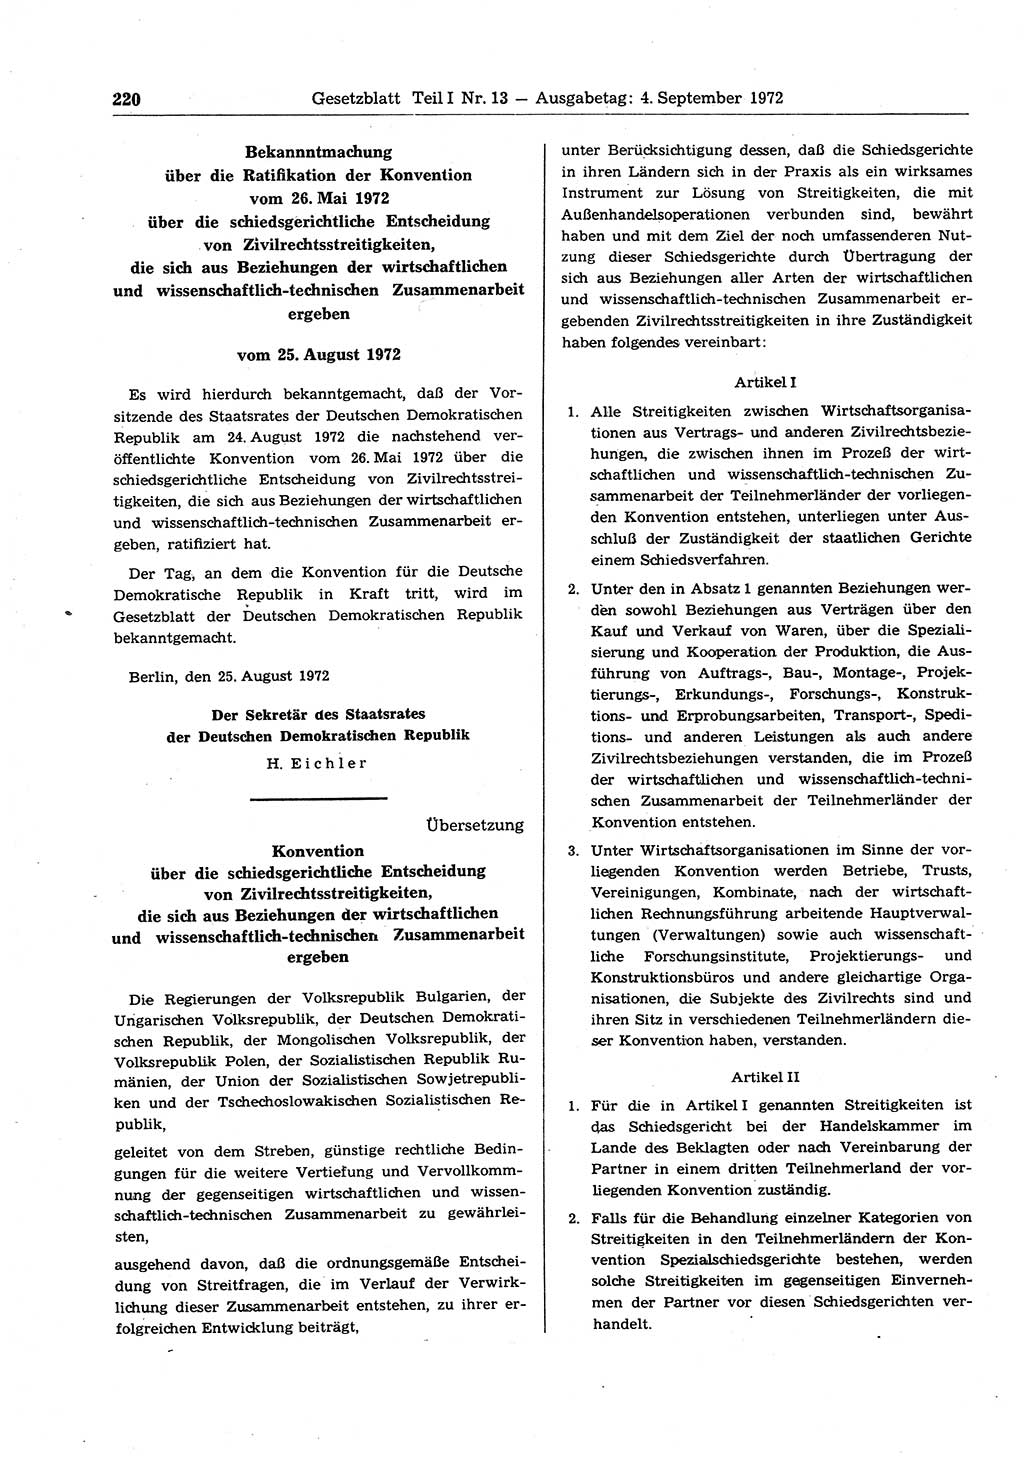 Gesetzblatt (GBl.) der Deutschen Demokratischen Republik (DDR) Teil Ⅰ 1972, Seite 220 (GBl. DDR Ⅰ 1972, S. 220)